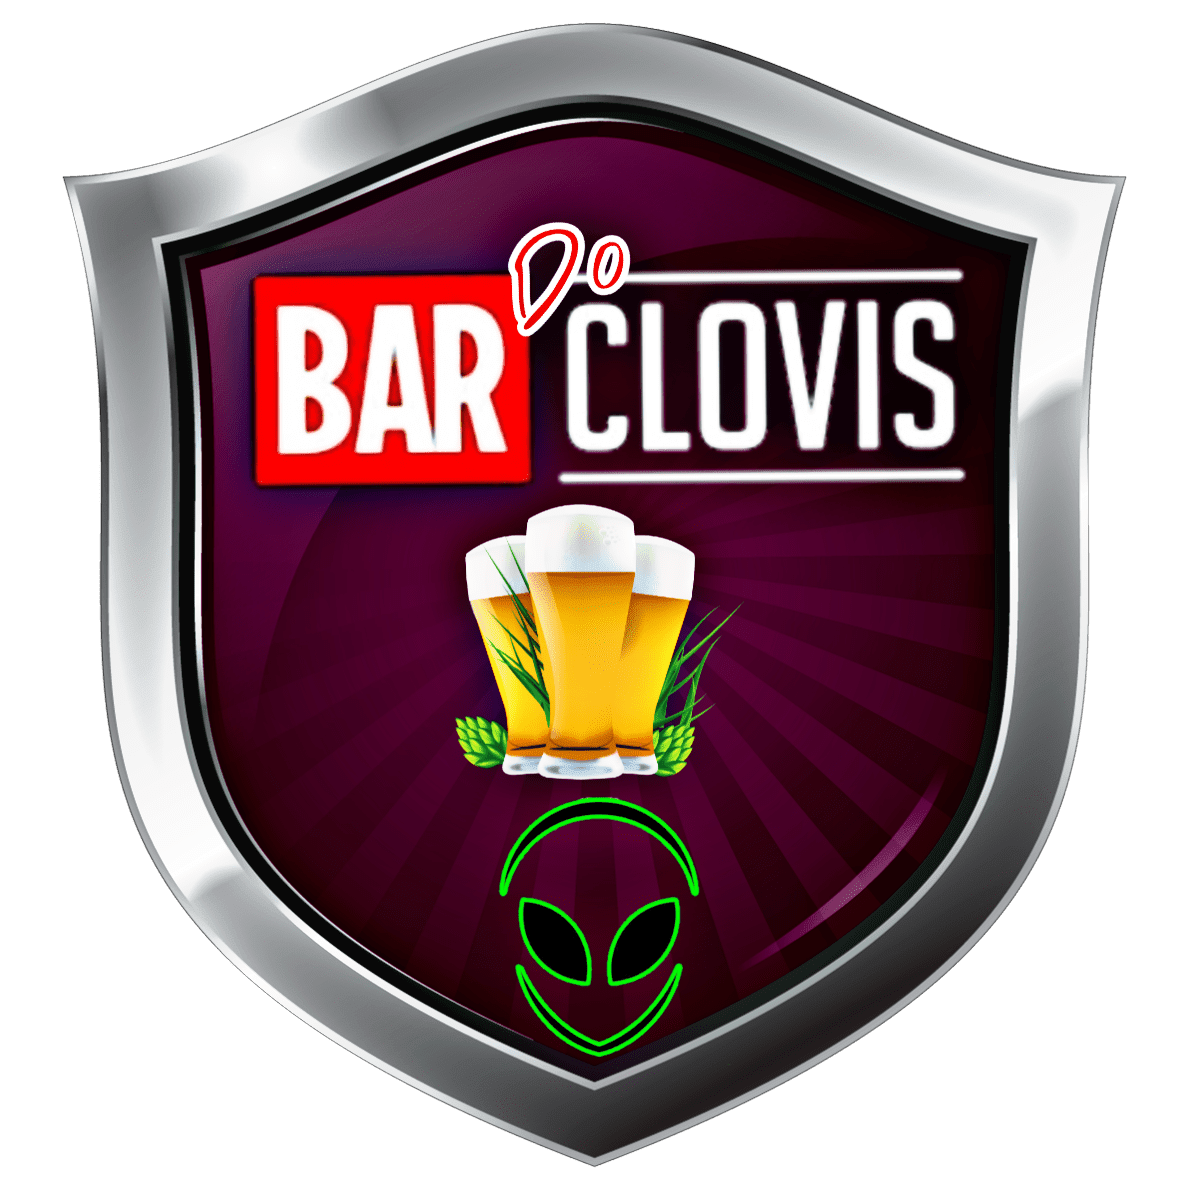 Bar do Clovis